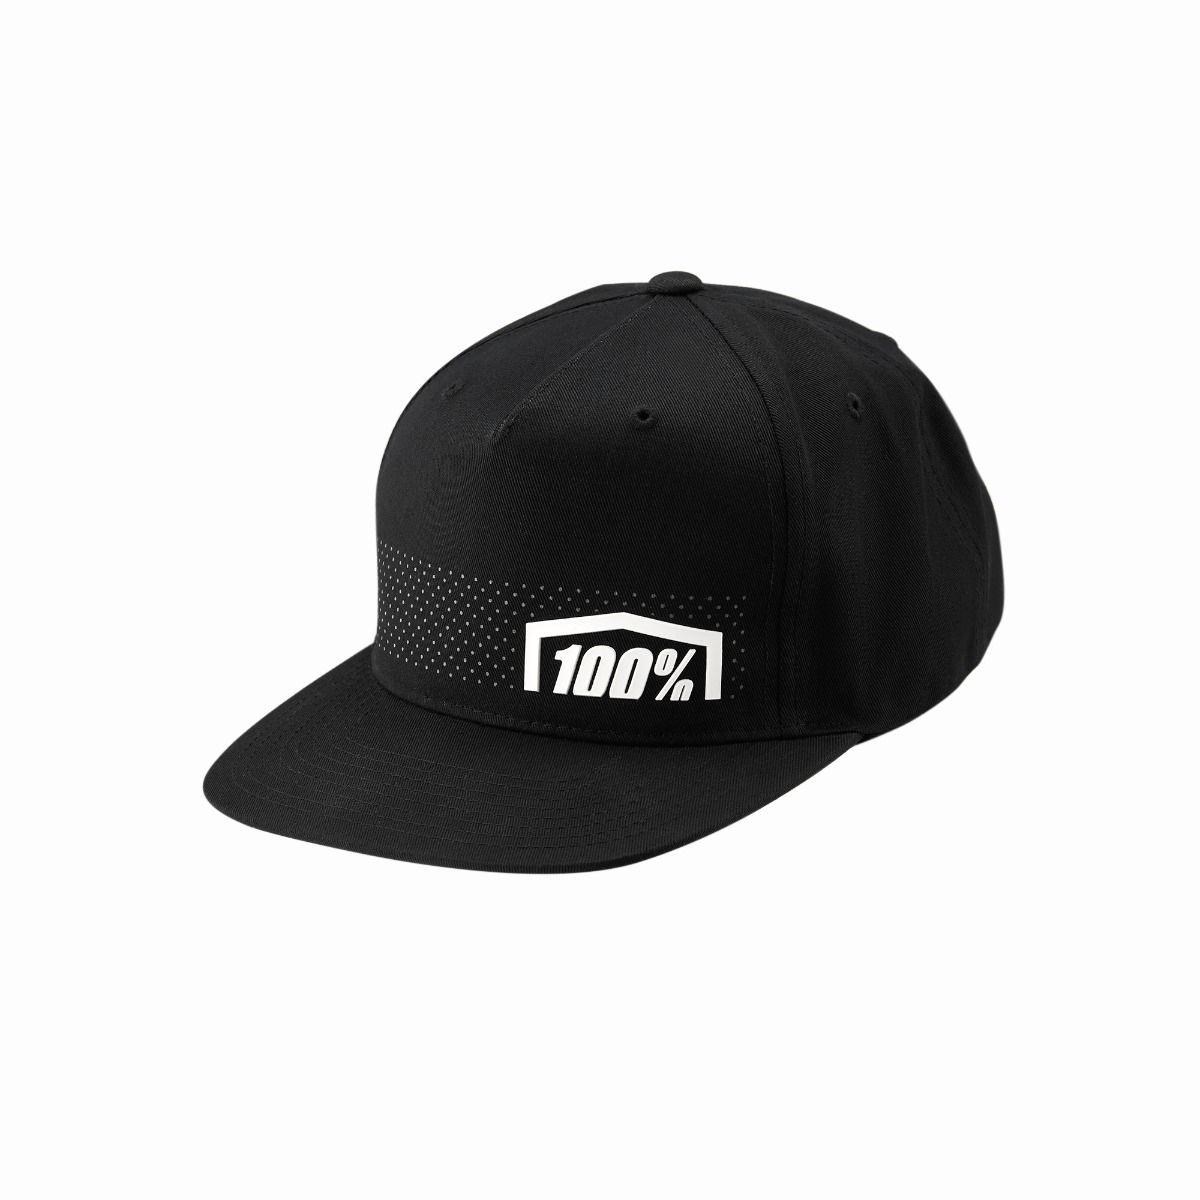 100% Nemesis Snapback Hat product image